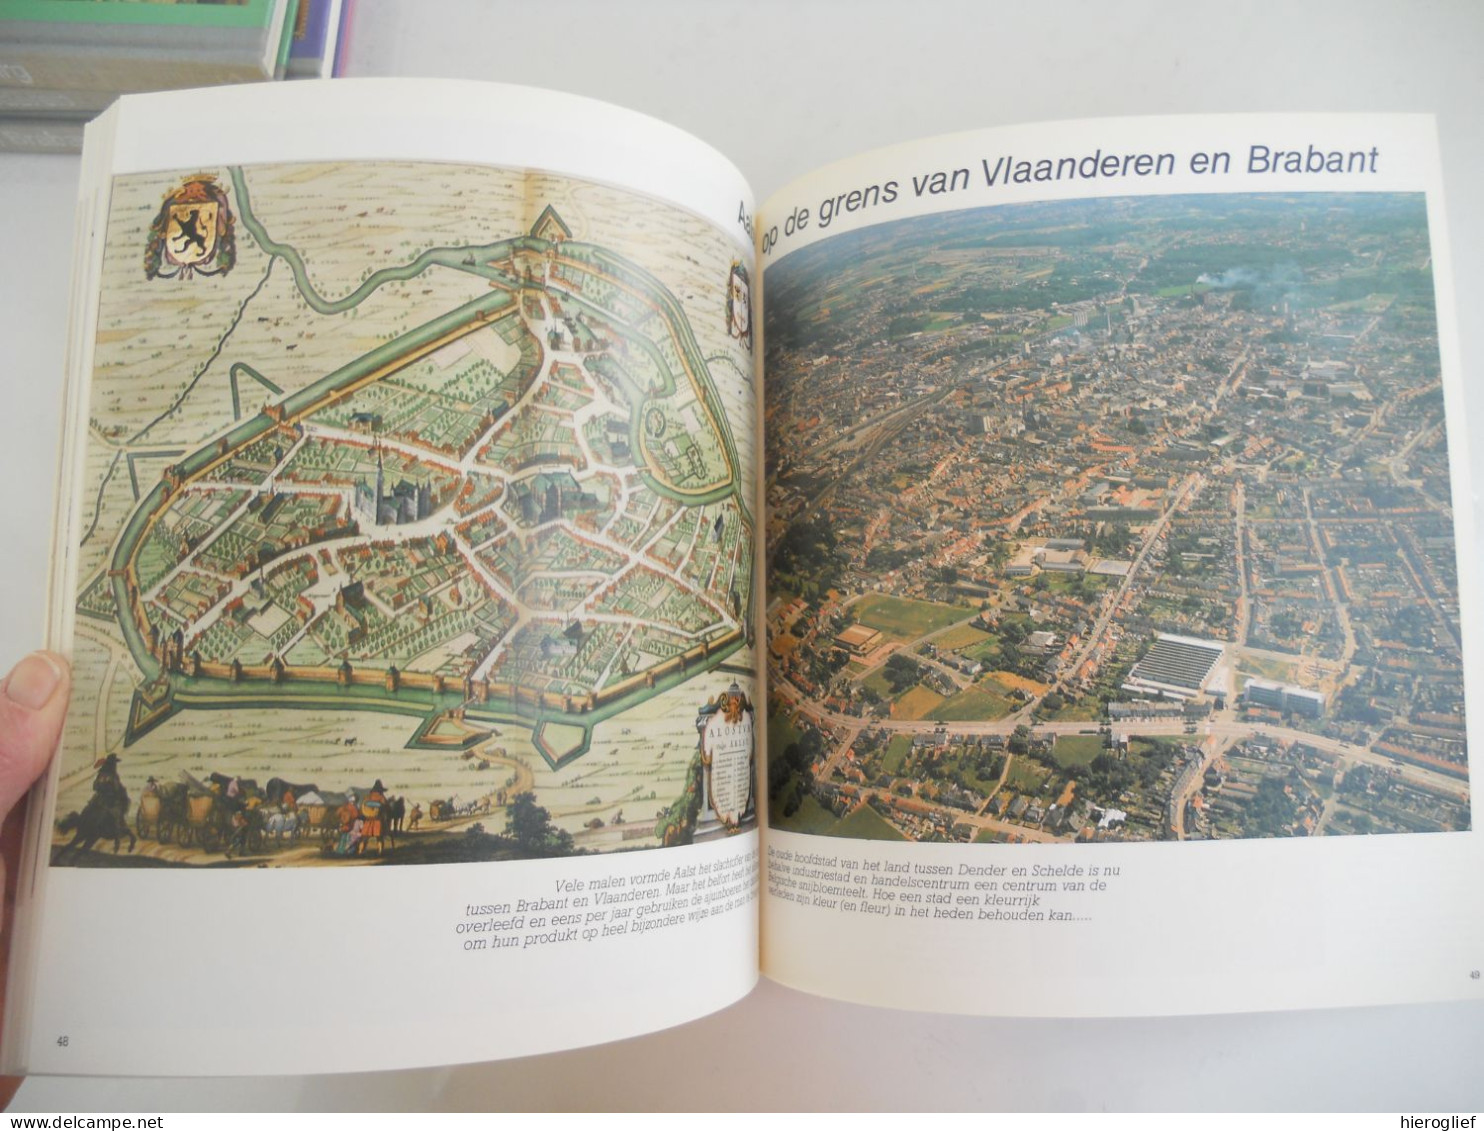 Oost- en West-Vlaanderen - Spiegel van steden dorpen en landschappen door Fr. Vandenbergh 1983 ijzer leie gent brugge